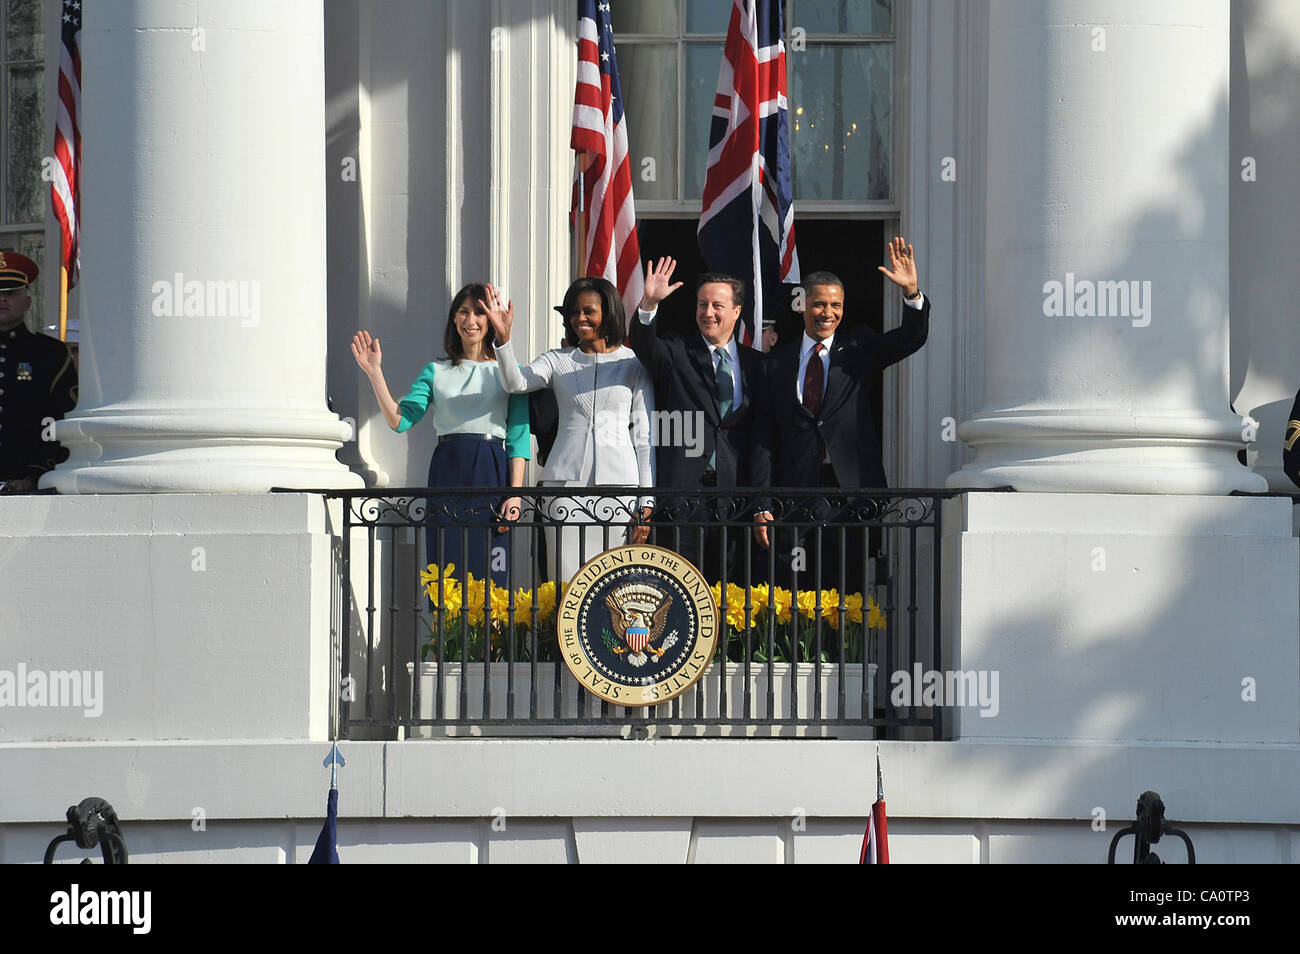 El presidente Barack Obama y la primera dama Michelle Obama junto con el Primer Ministro británico, David Cameron, y su esposa, Samantha Cameron, adiós al final de la ceremonia de llegada de la Casa Blanca el 14 de marzo de 2012 en Washington, DC. Foto de stock